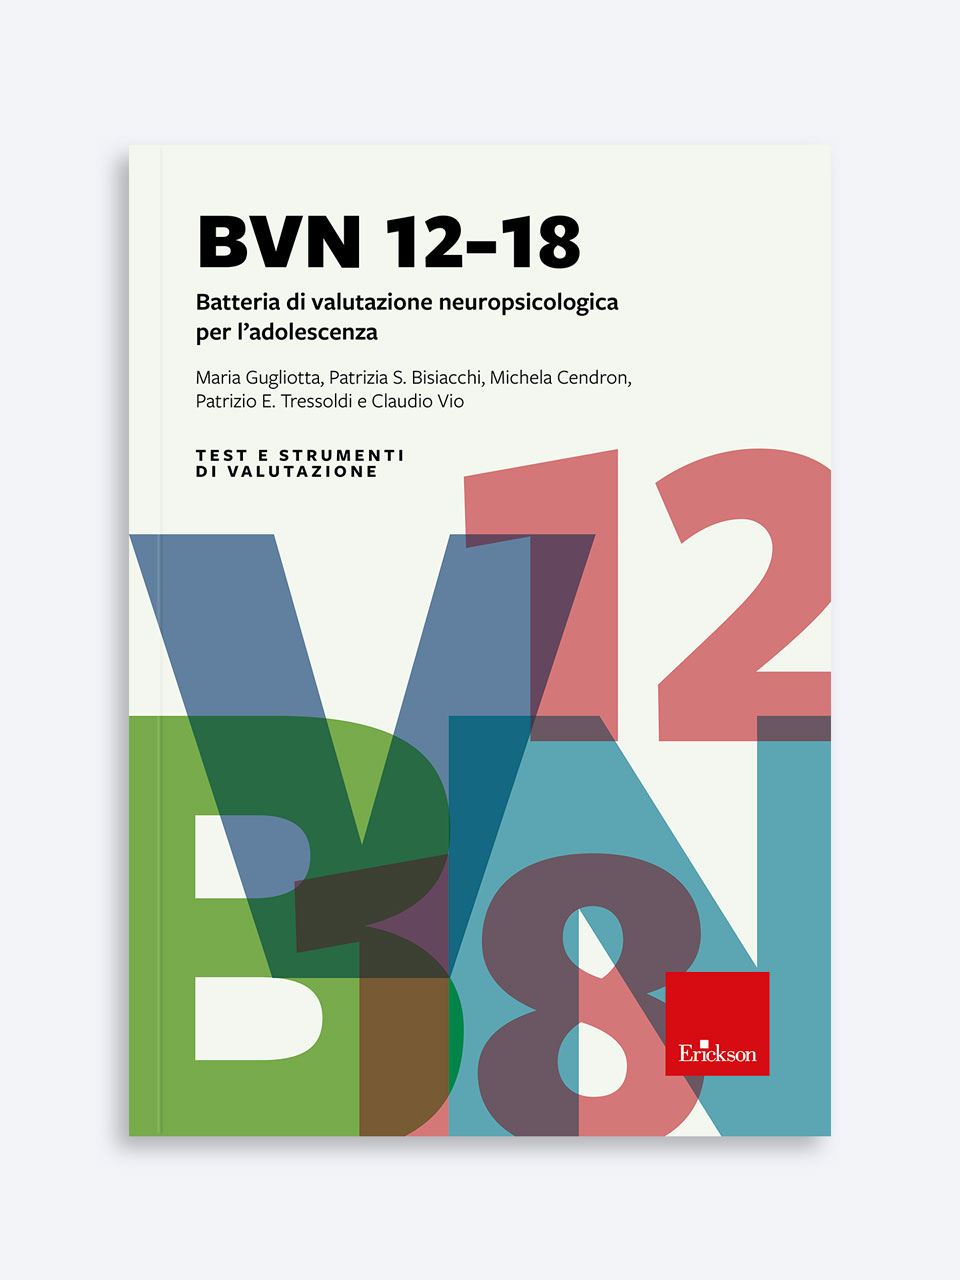 BVN 12-18 - Test neuropsicologici di memoria visiva e spaziale